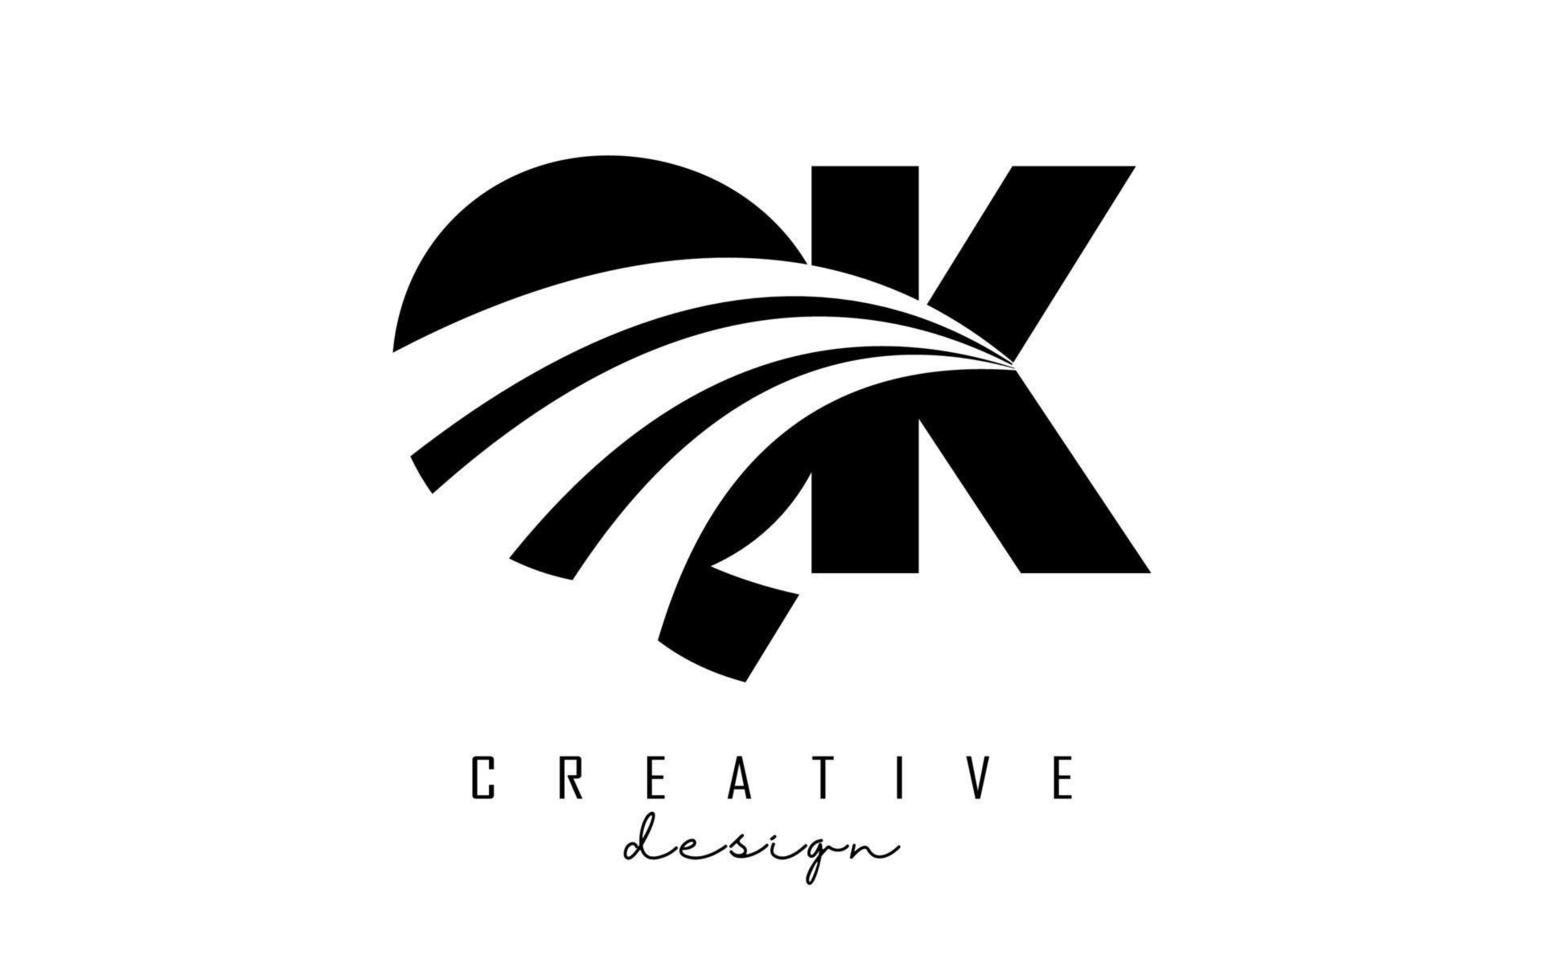 Logotipo creativo de letras negras qk qk con líneas principales y diseño de concepto de carretera. letras con diseño geométrico. vector